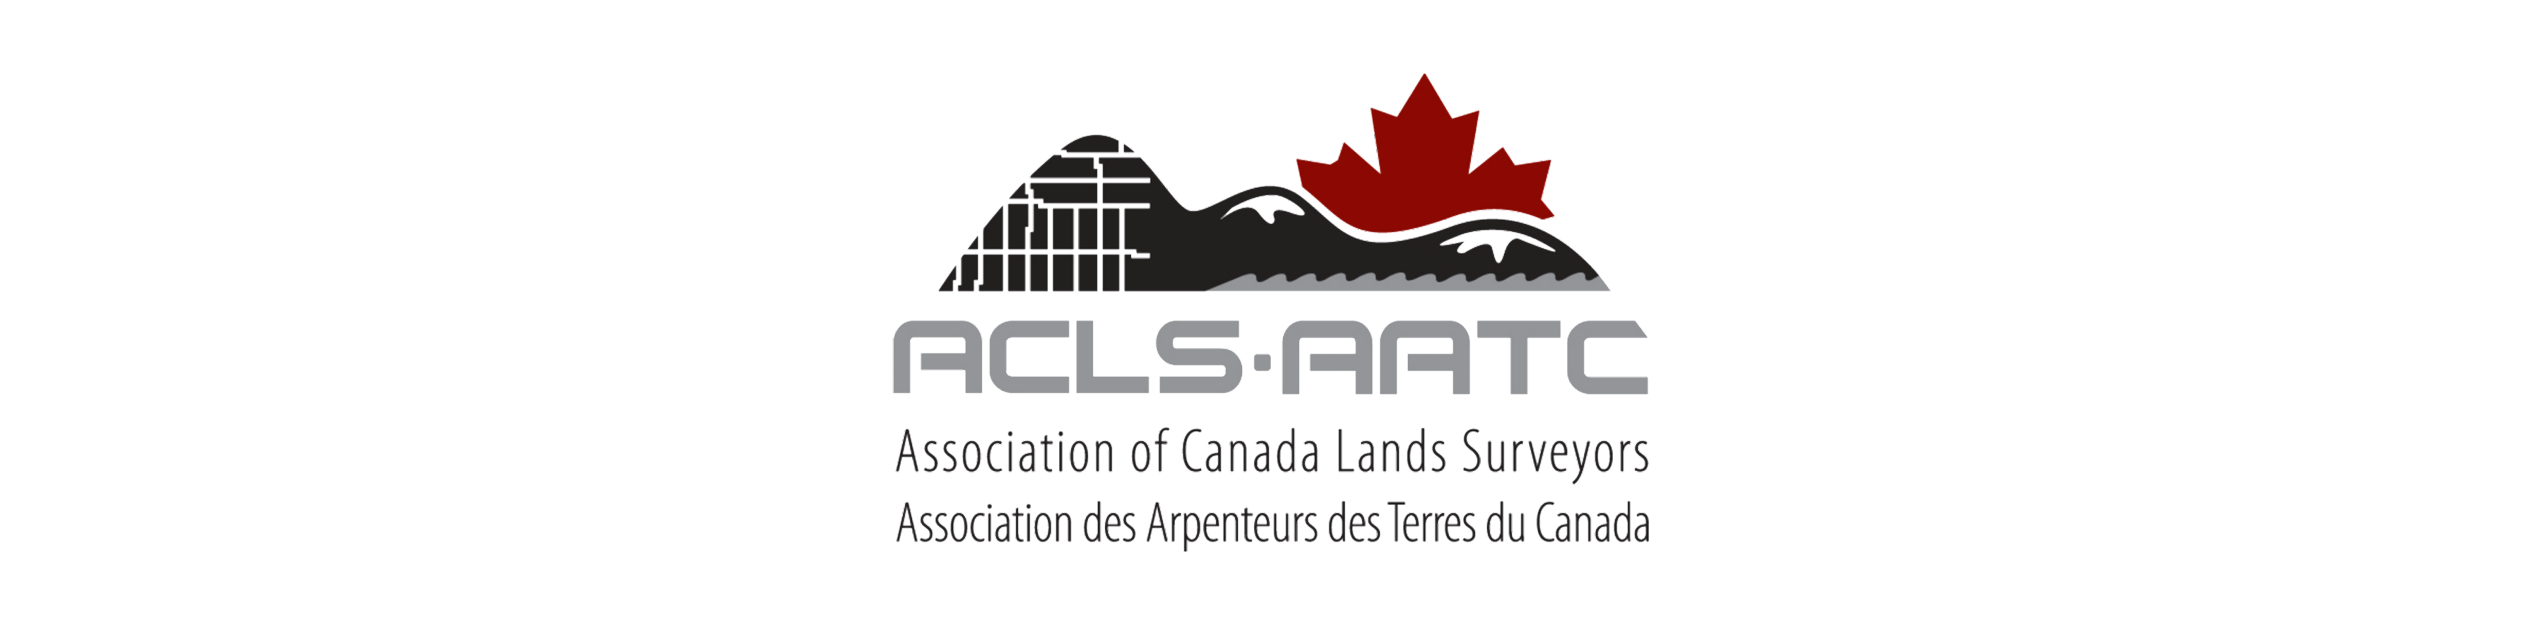 Logo de l'association des arpenteurs des terres du Canada une affiliation professionnelle de Giroux Arpentage